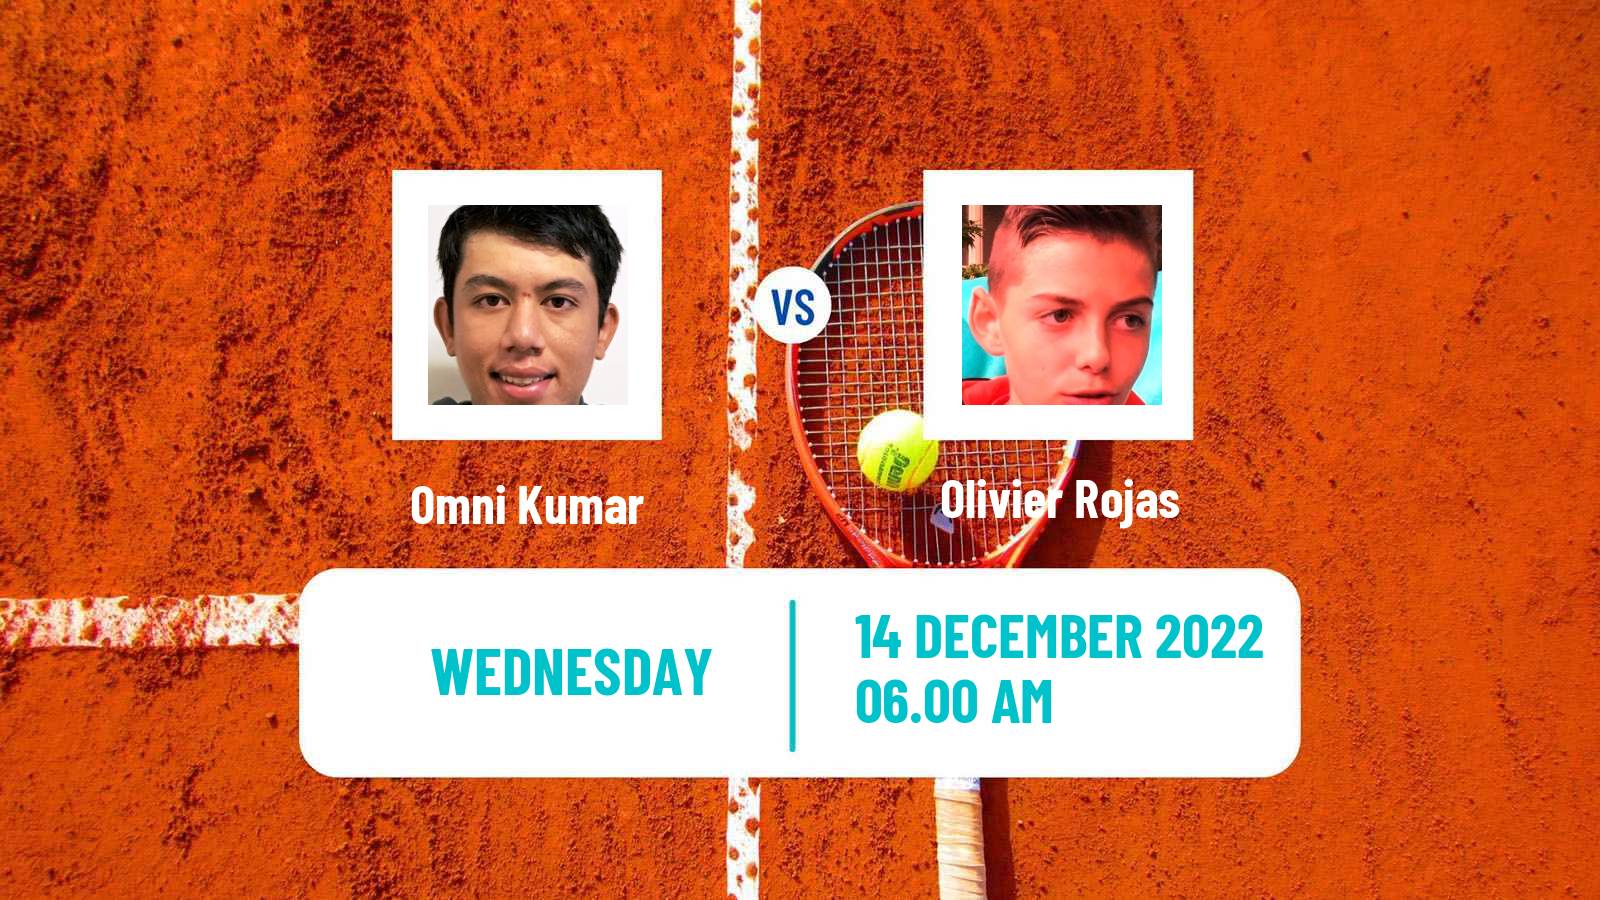 Tennis ITF Tournaments Omni Kumar - Olivier Rojas